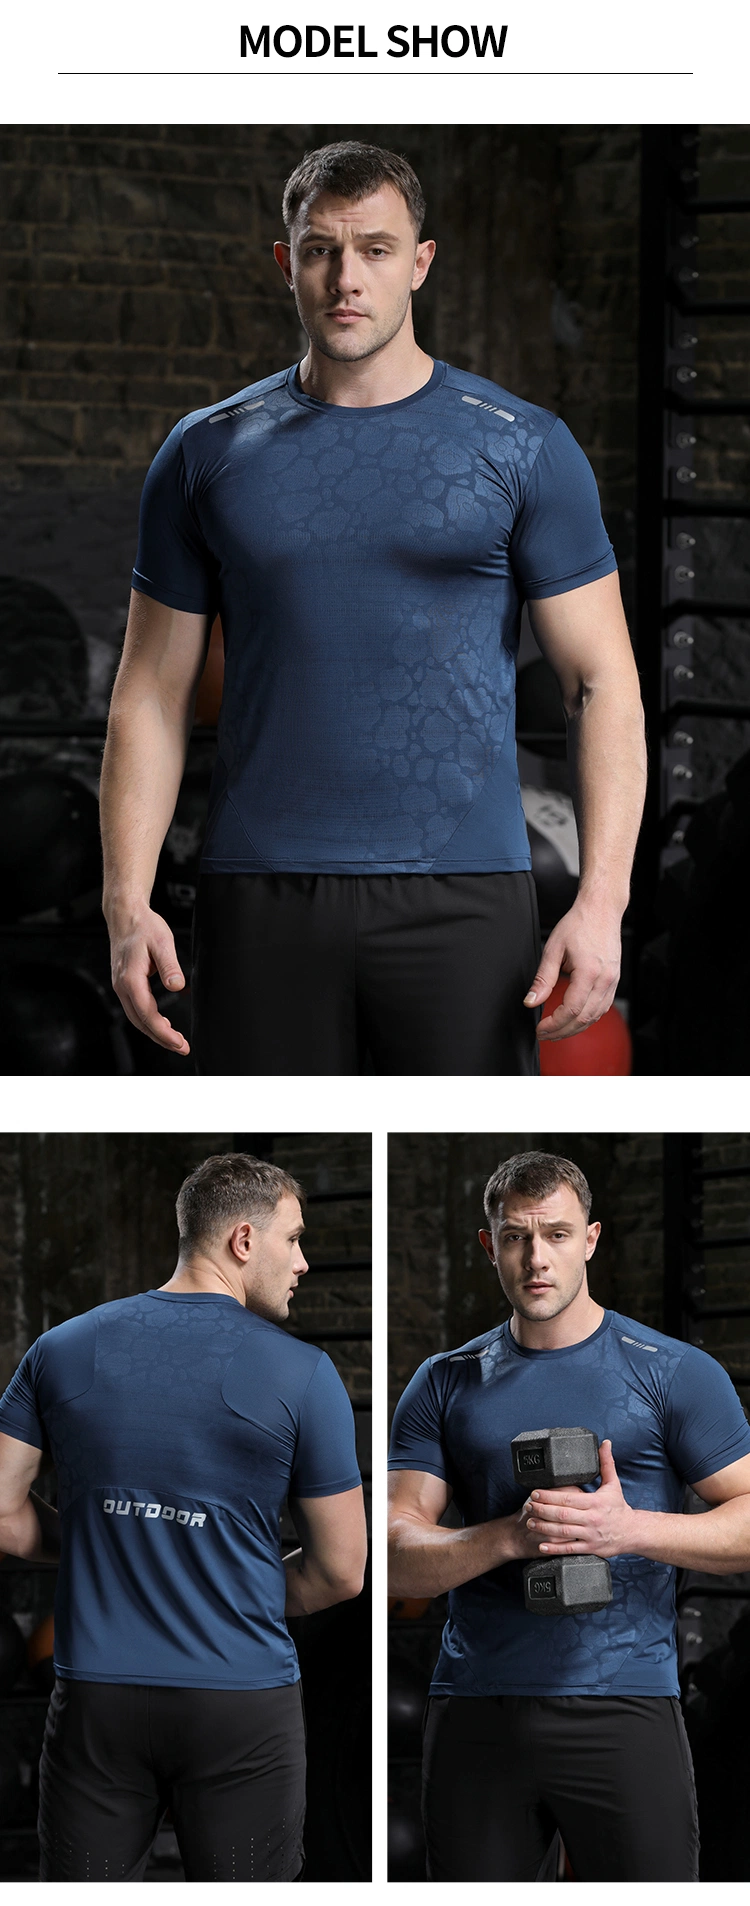 High Quality Gym Sports Casual Pattern Crew Neck Tshirt Tshirts Wholesale Tshirt Printing